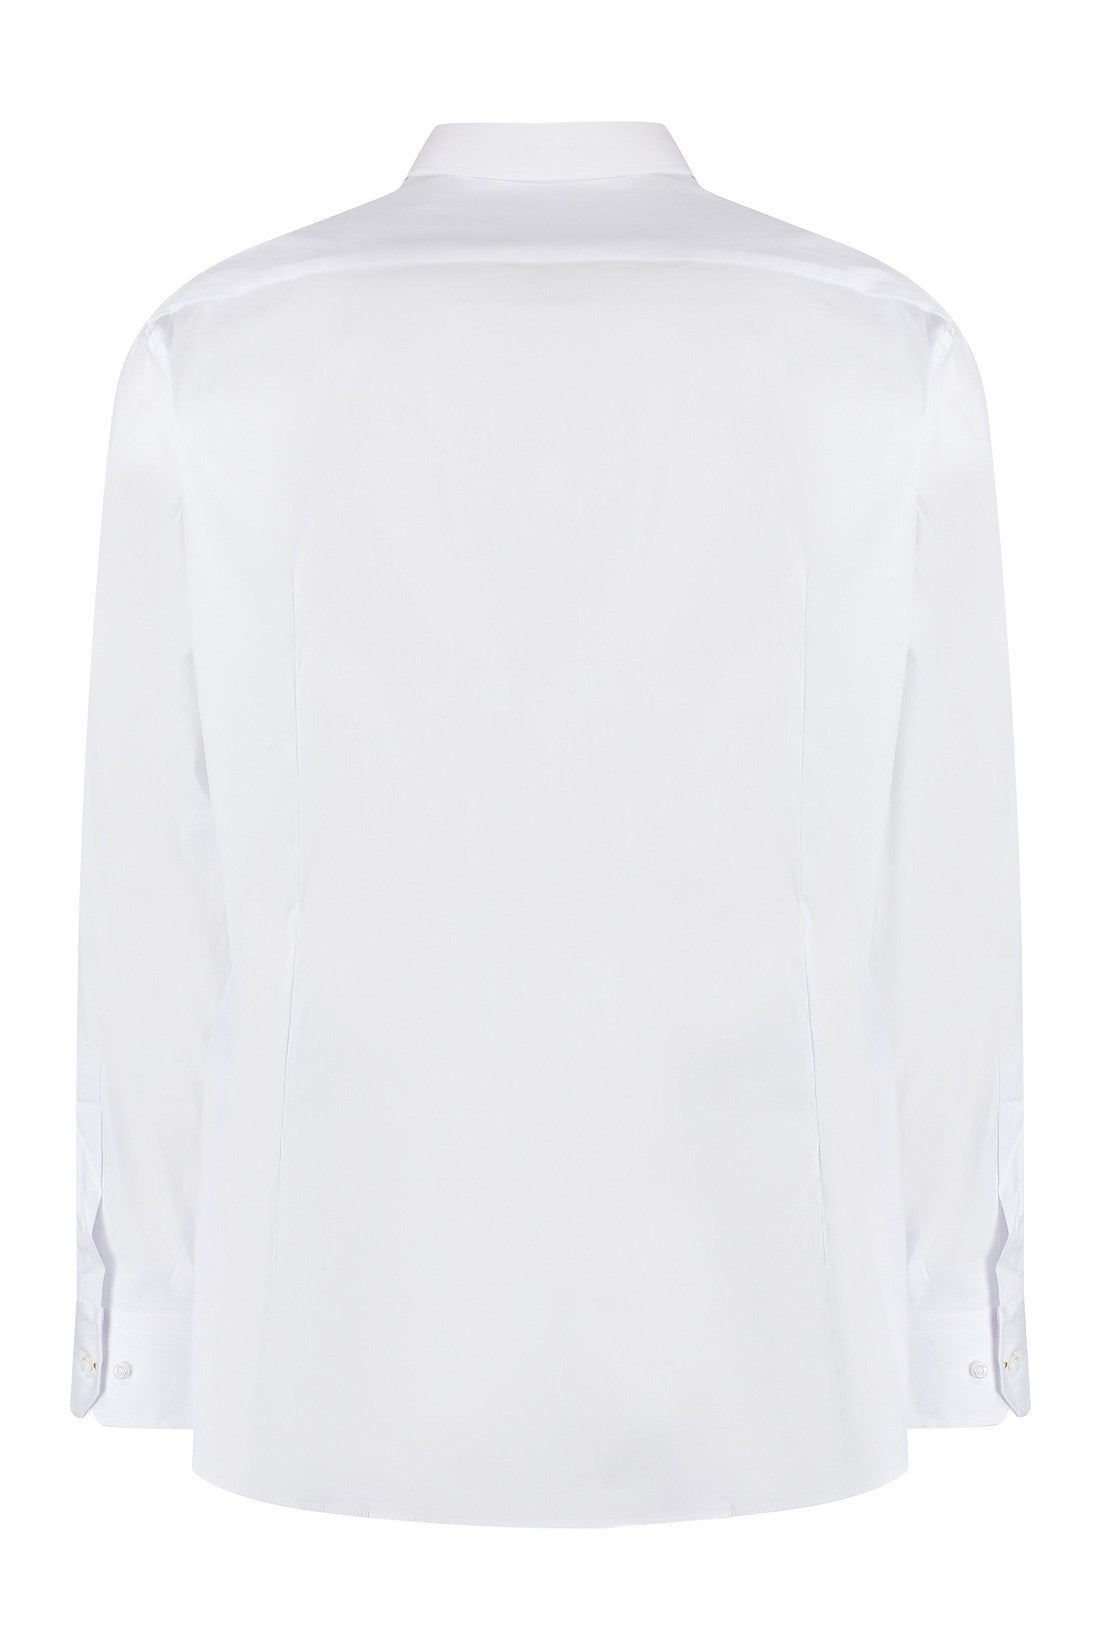 BOSS-OUTLET-SALE-Cotton shirt-ARCHIVIST